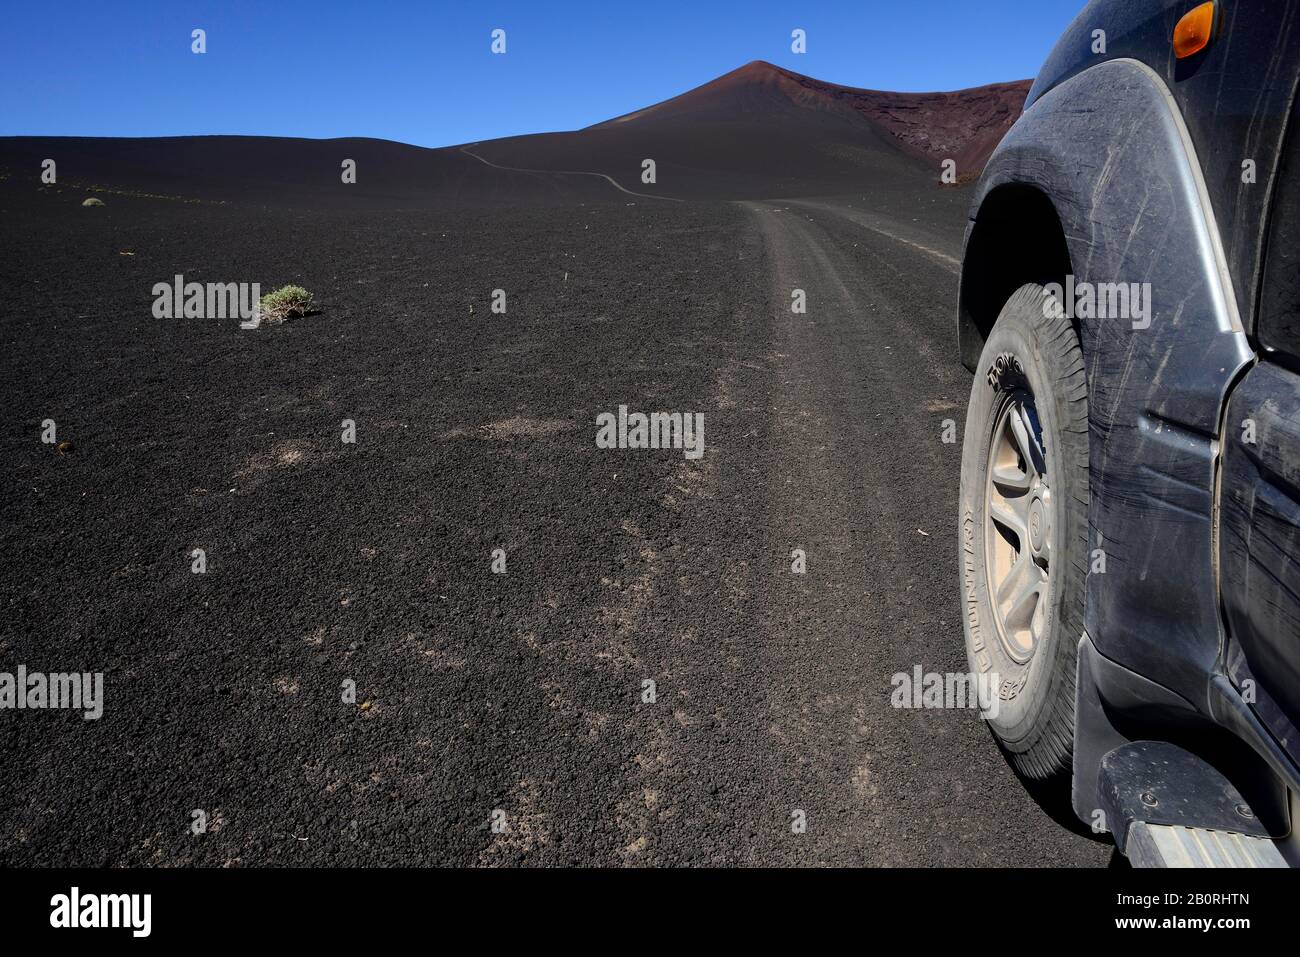 Véhicule tout-terrain sur la route à travers le paysage lunaire volcanique, Reserva la Payunia, province de Mendoza, Argentine Banque D'Images